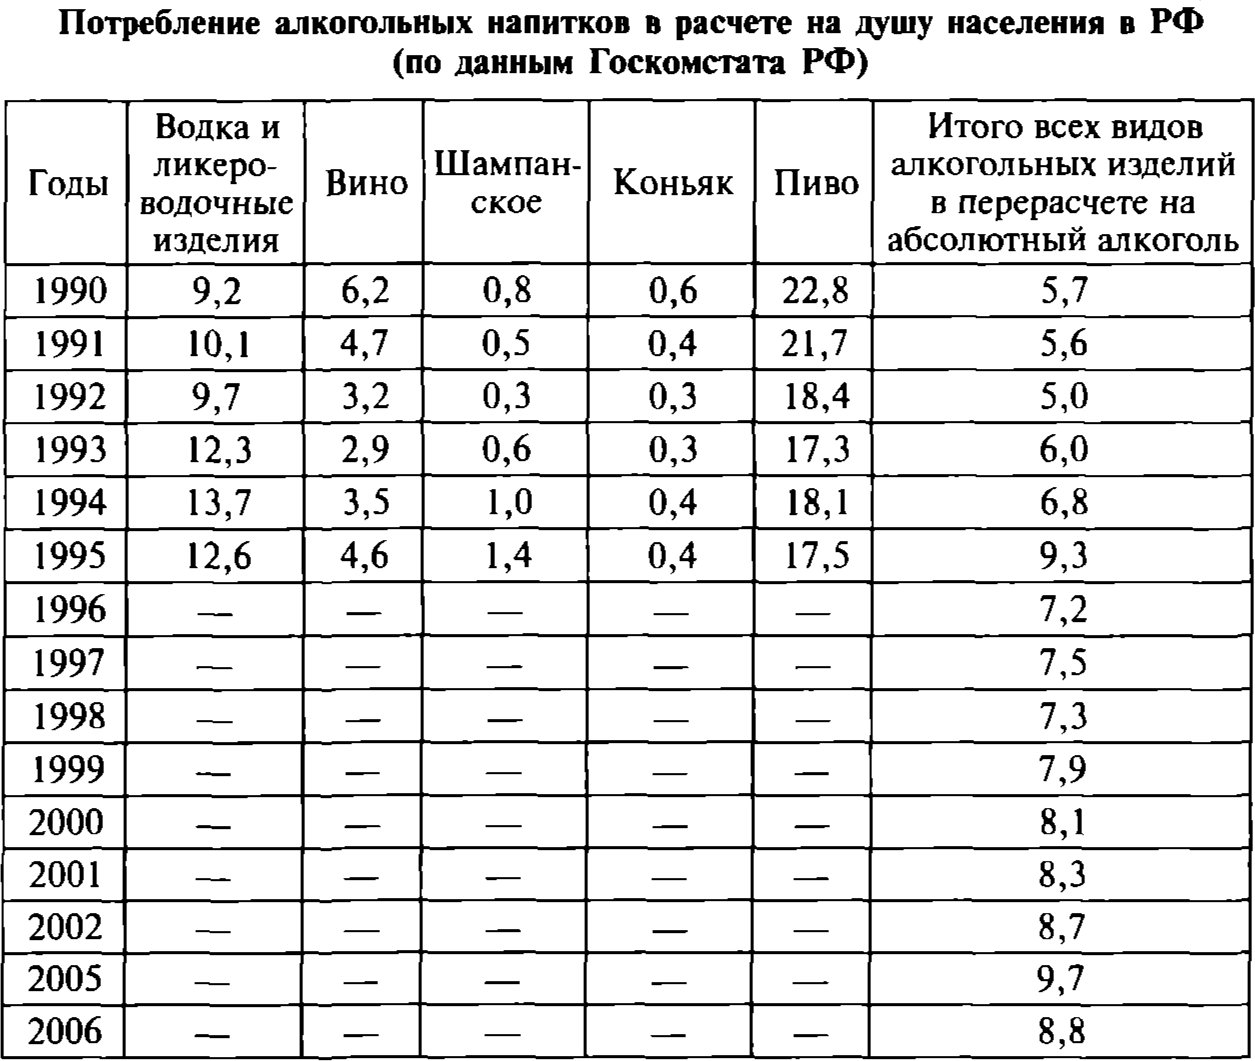 Потребление алкогольных напитков в расчете на душу населения в РФ